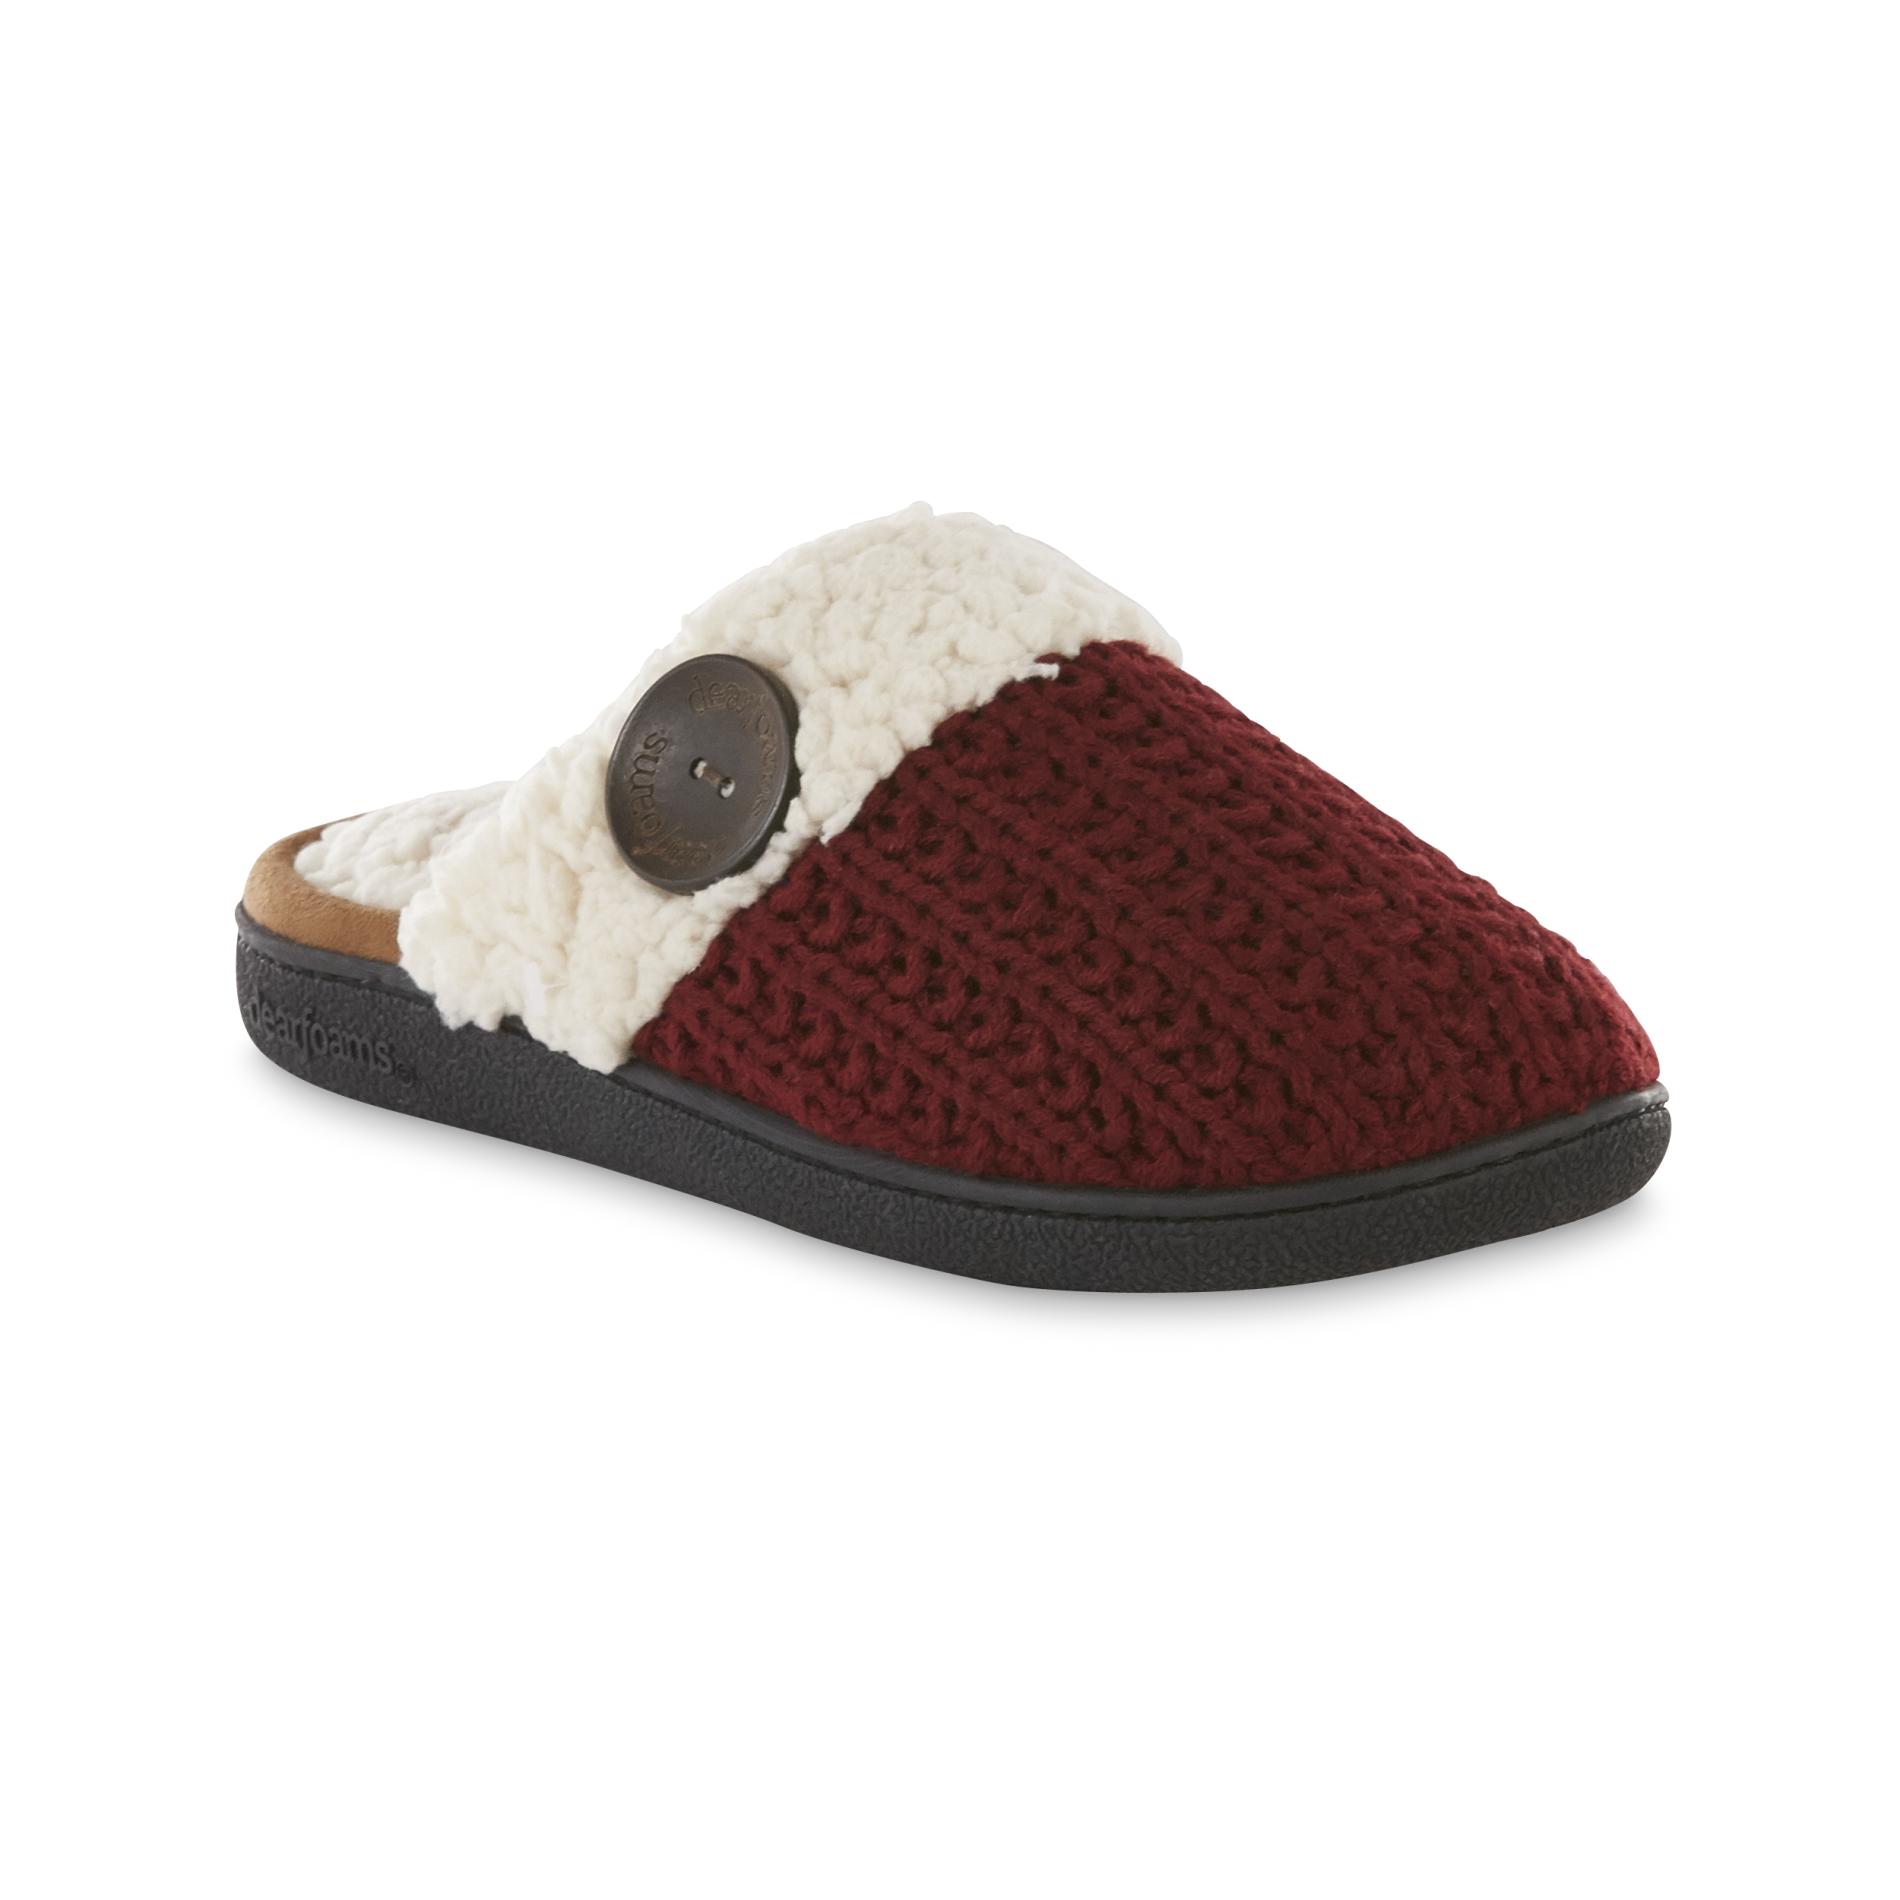 Dearfoams Women's Maroon/Cream Sweater Knit Clog Slipper | Shop Your ...